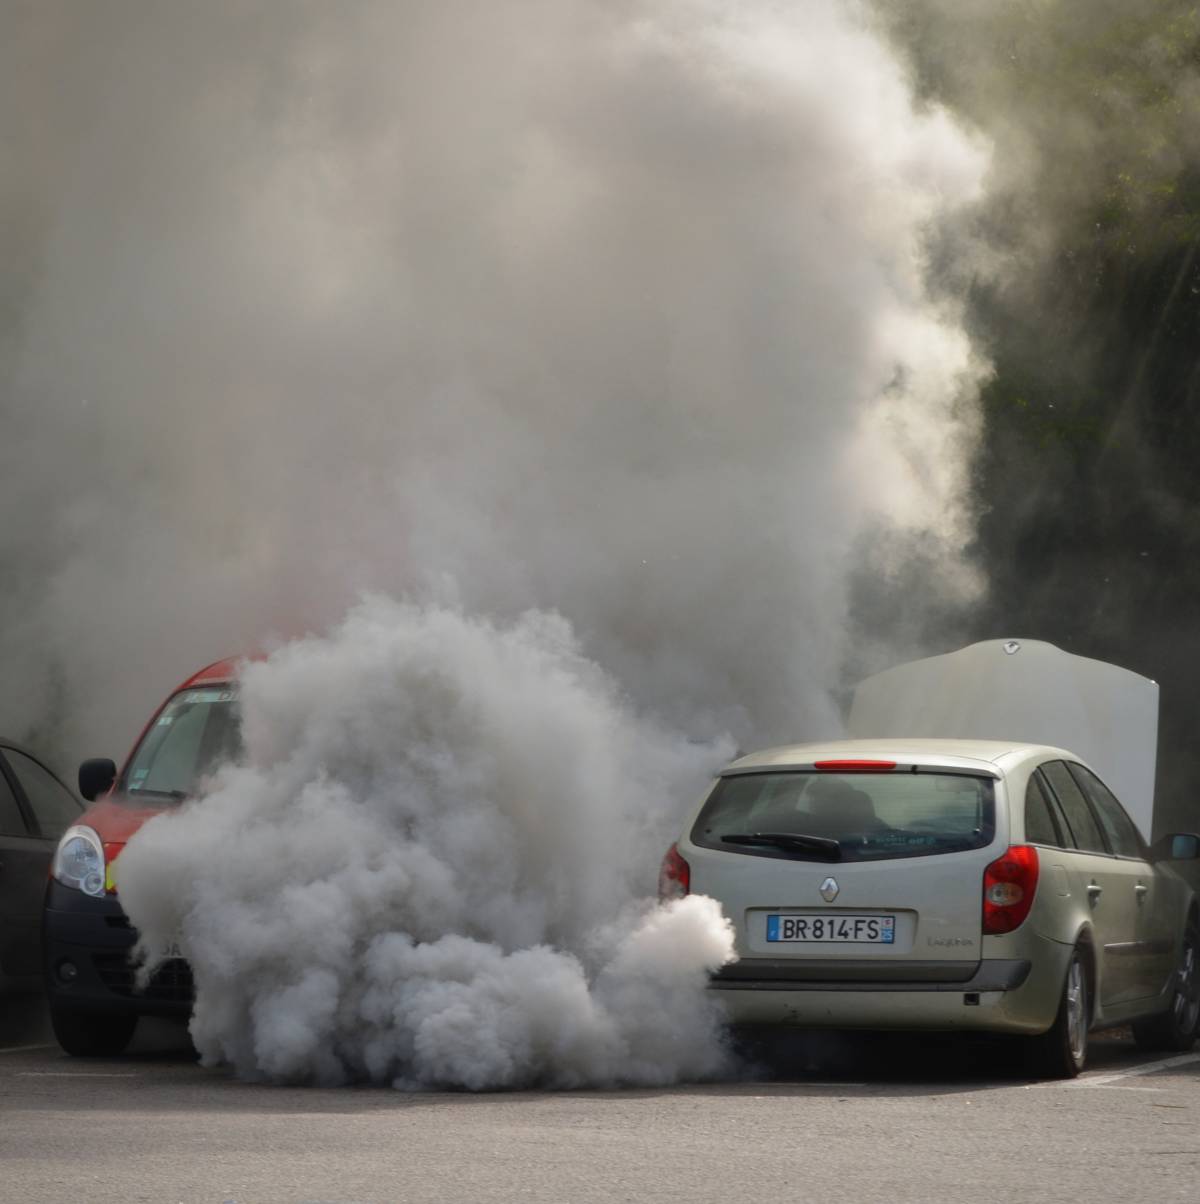 "Emissioni auto, gravi mancanze Ue"